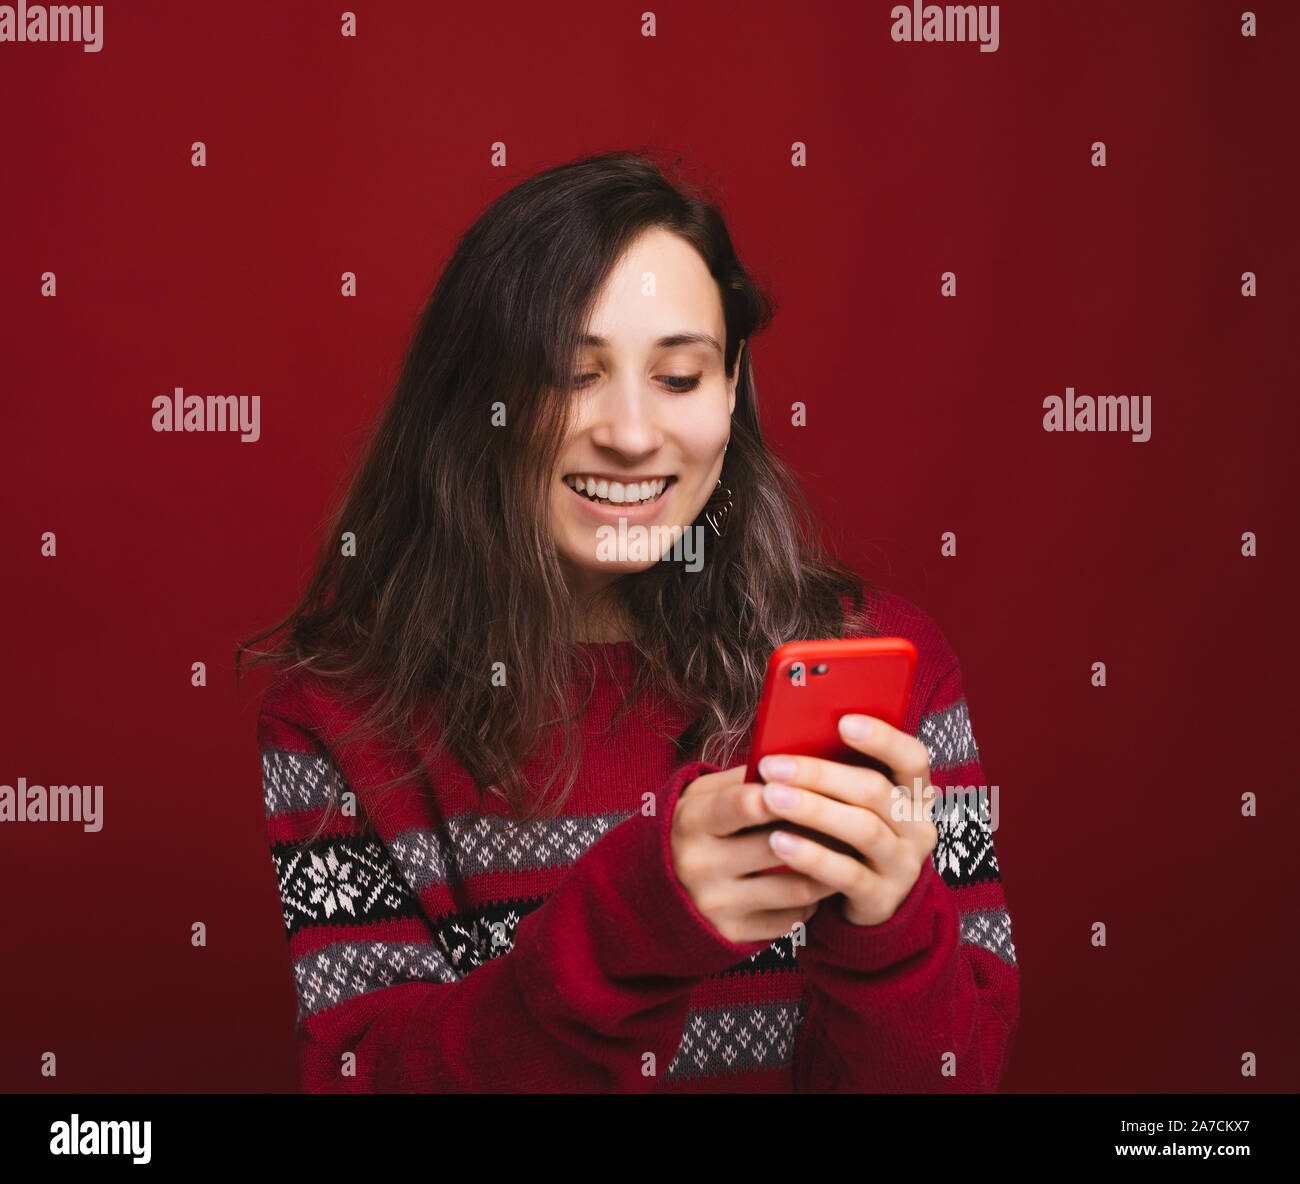 Cheerful yougn pull femme en rouge en utilisant son smartphone sur fond rouge Banque D'Images